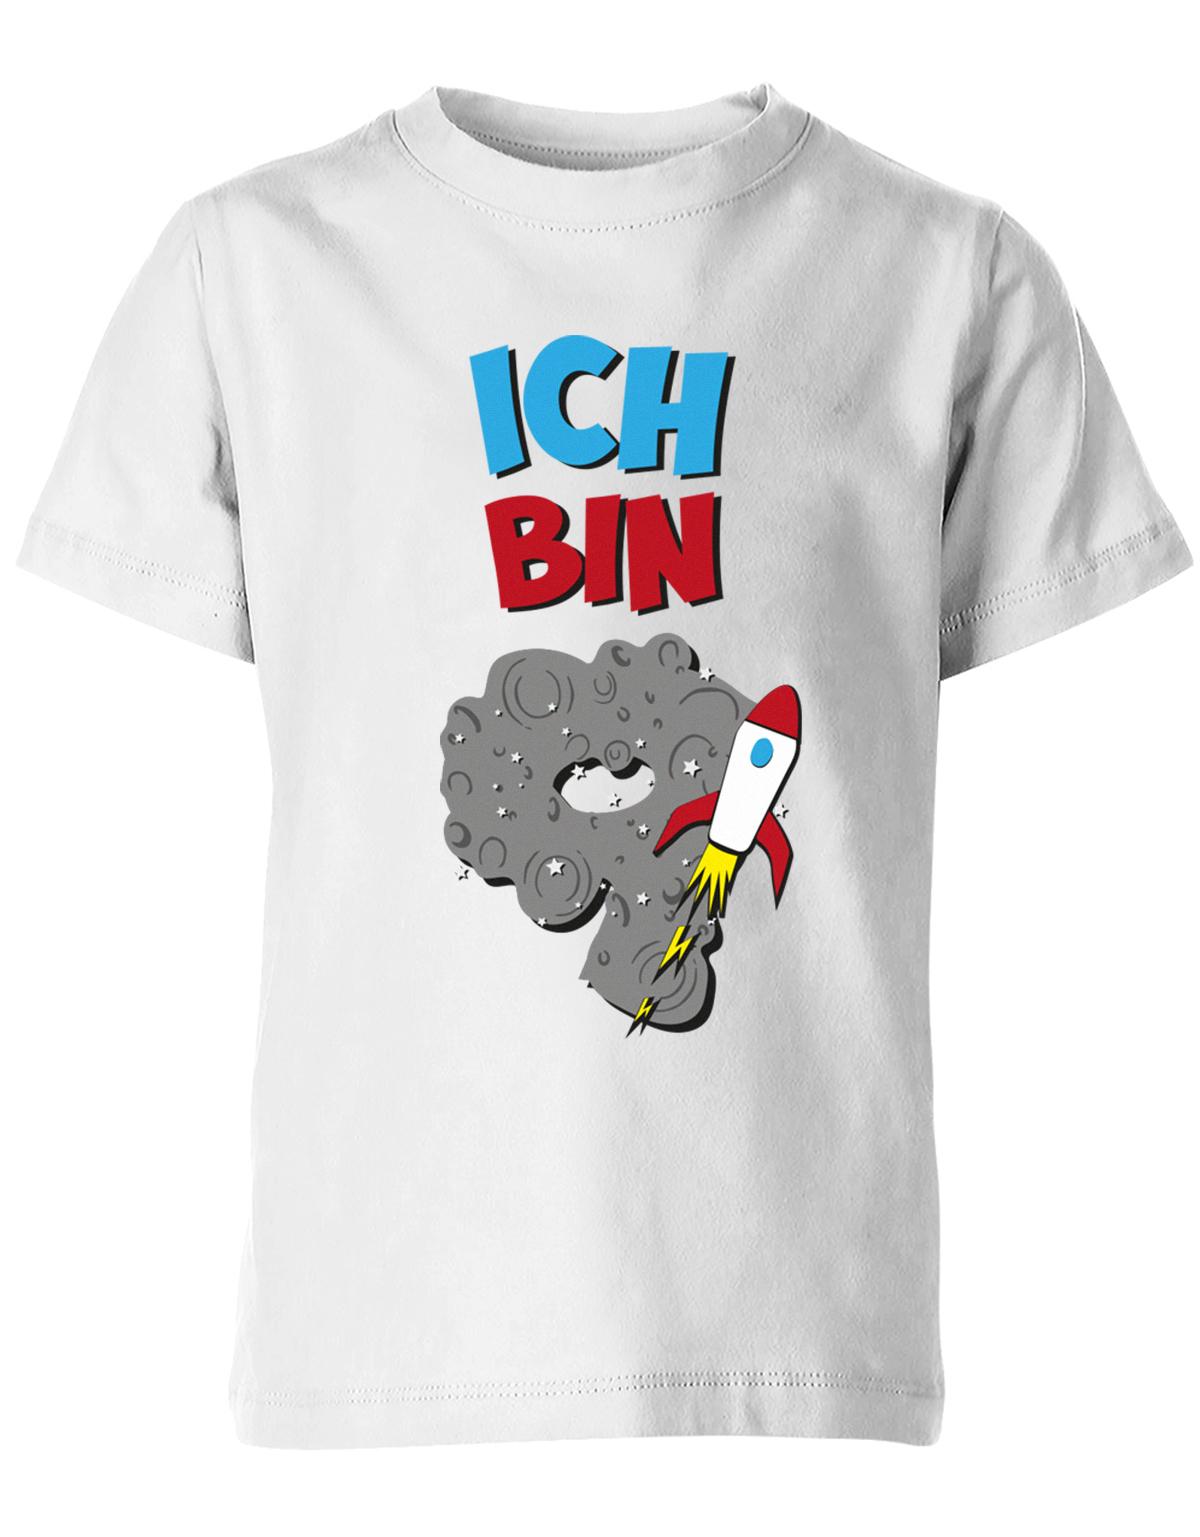 ich-bin-9-weltraum-rakete-planet-geburtstag-kinder-shirt-weiss